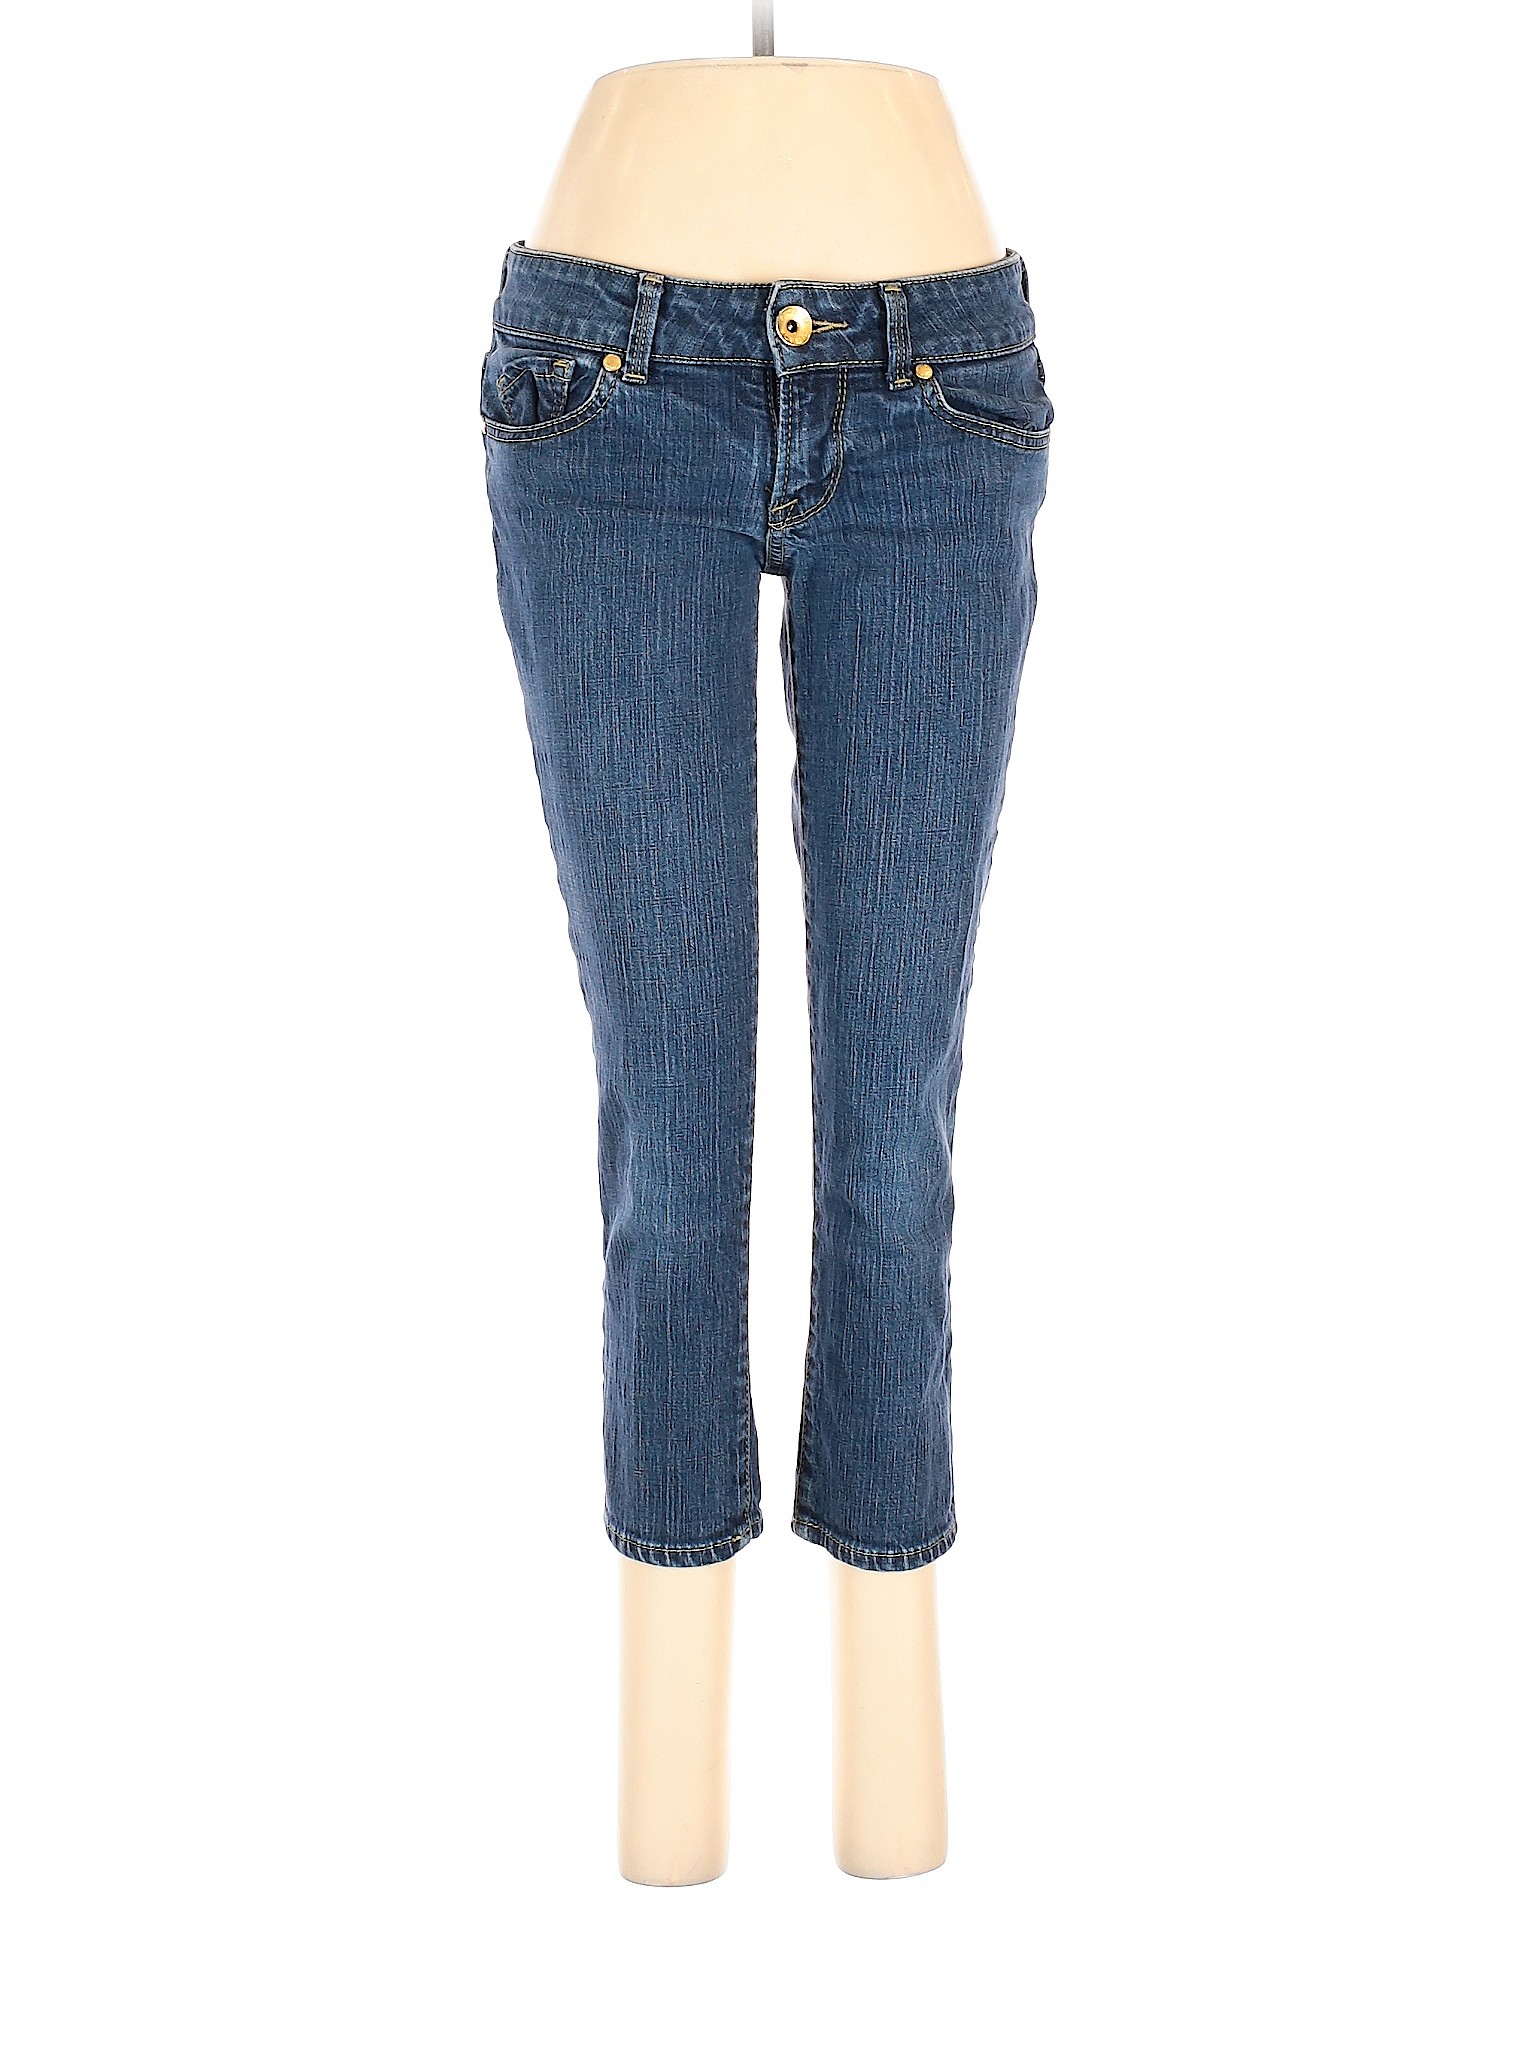 Arden B. Women Blue Jeans 6 | eBay